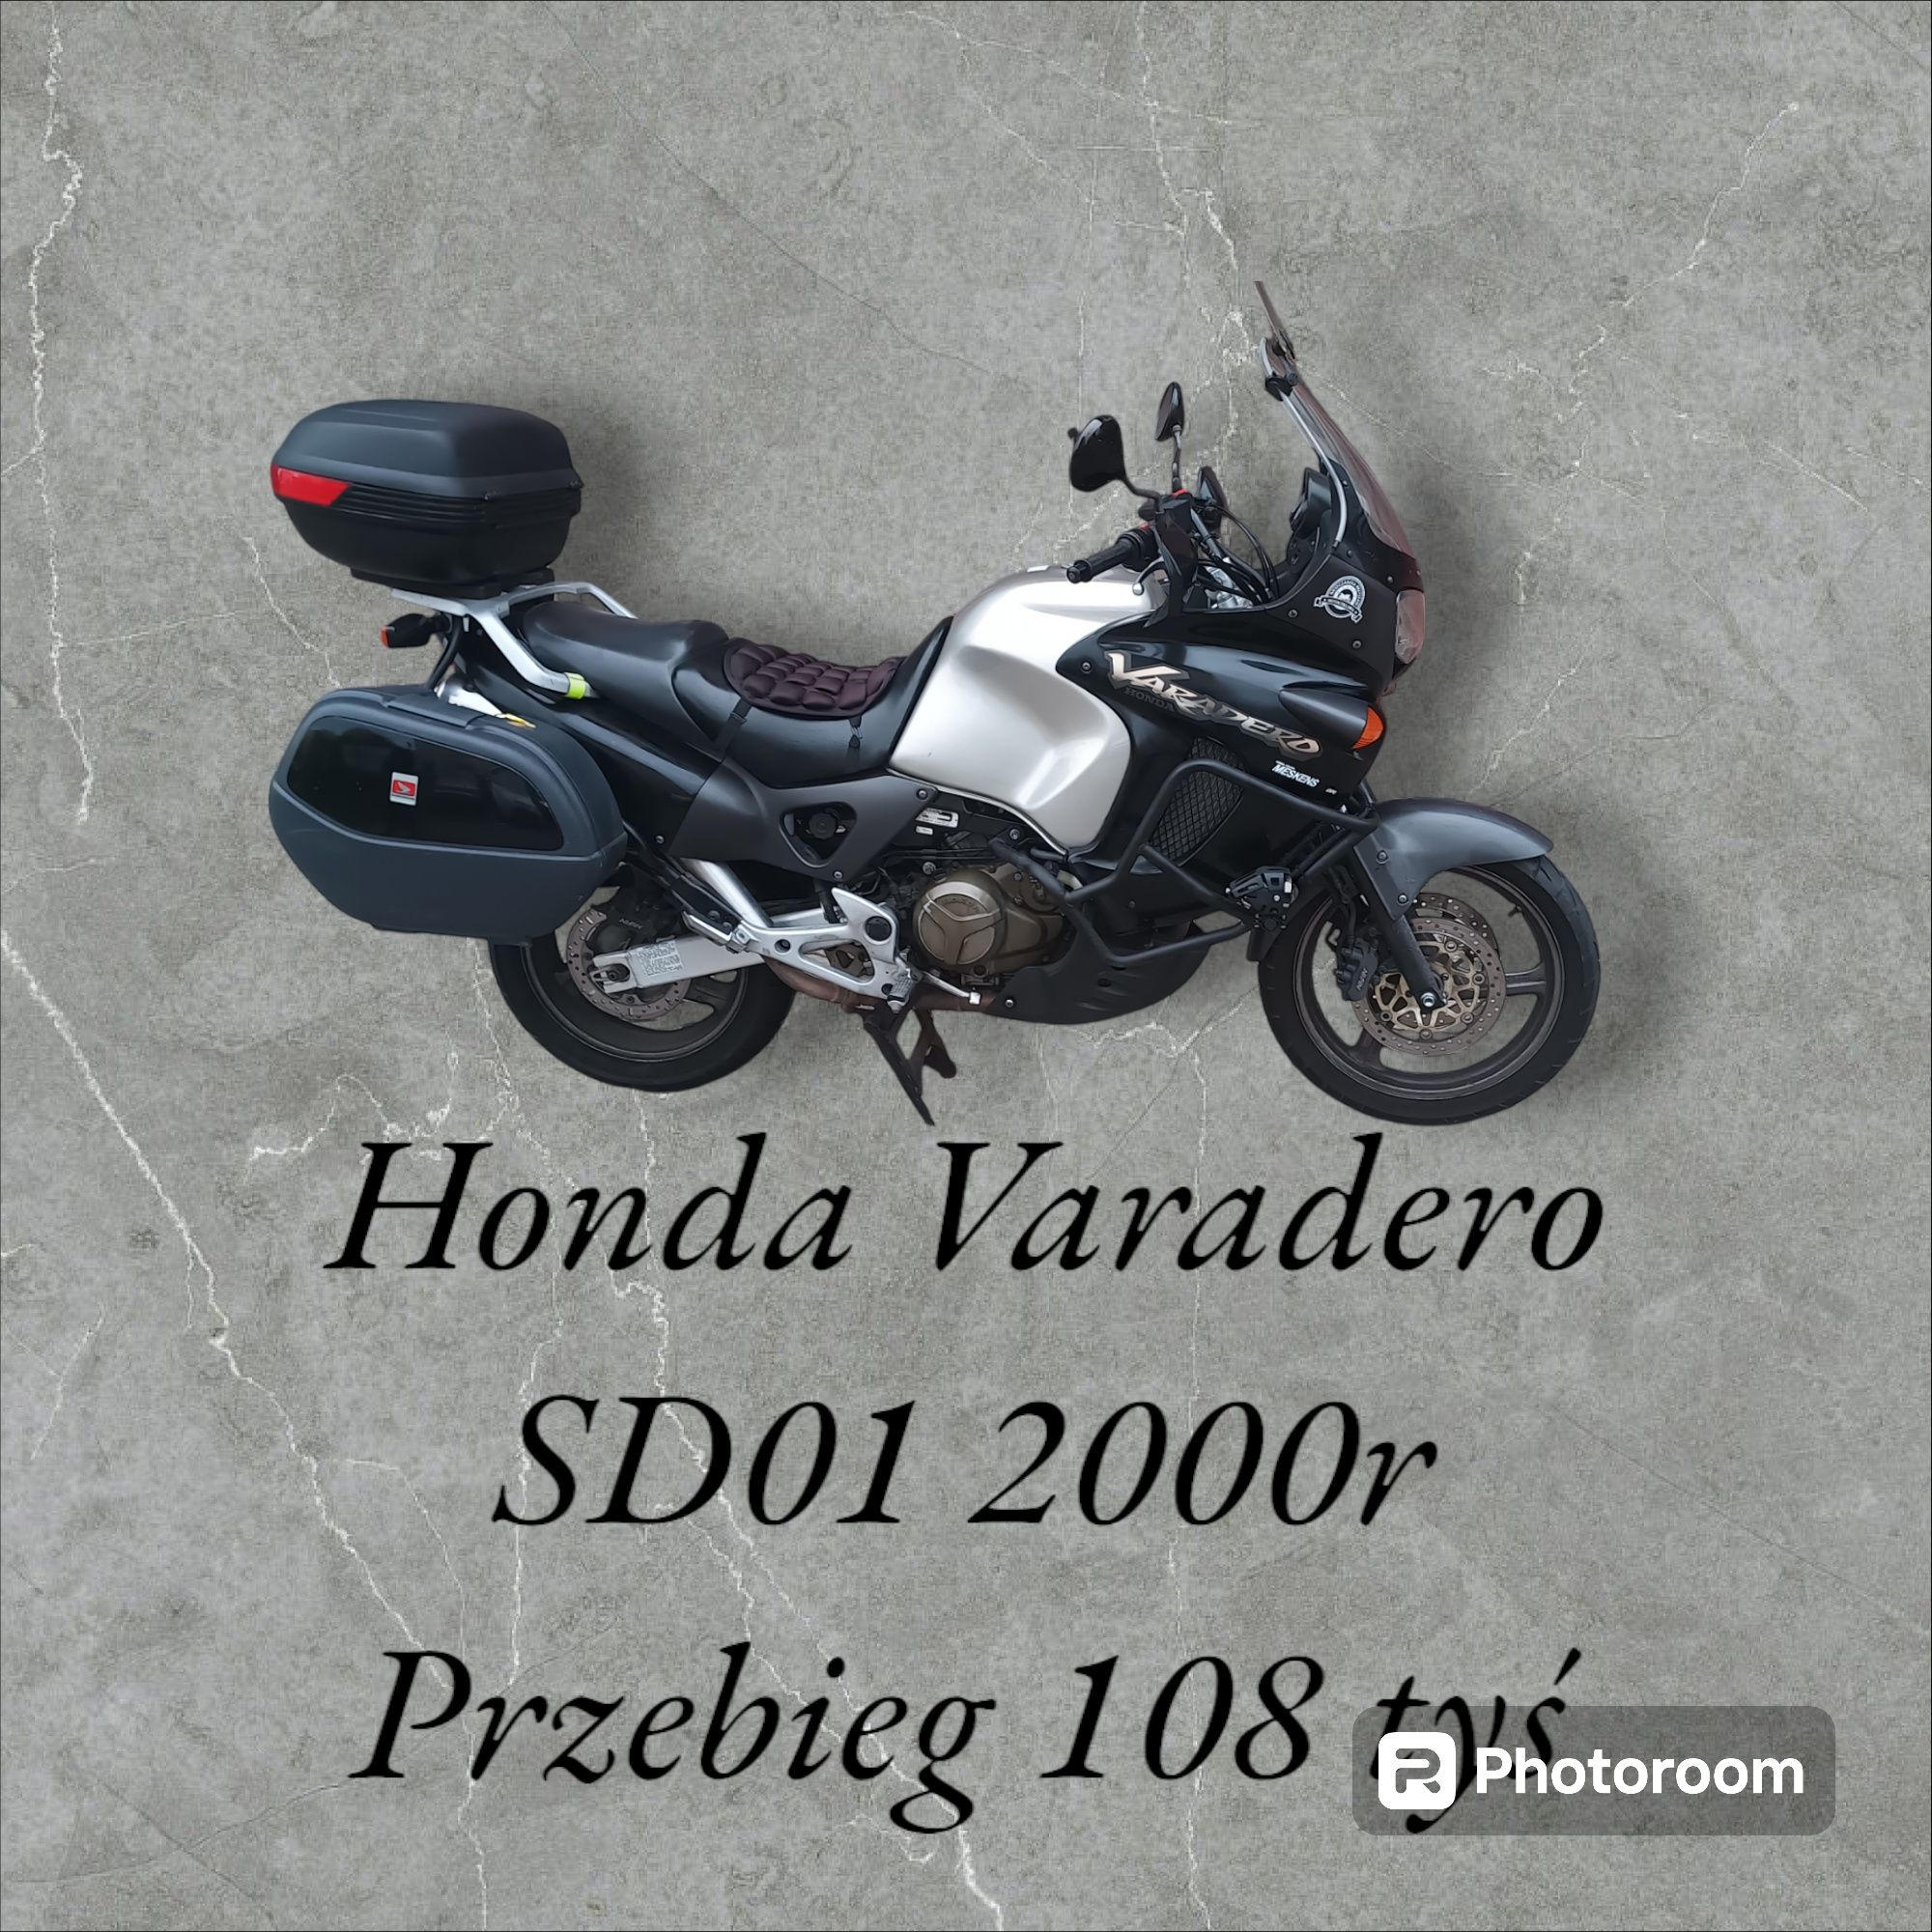 Honda Varadero SD01 1000ccm